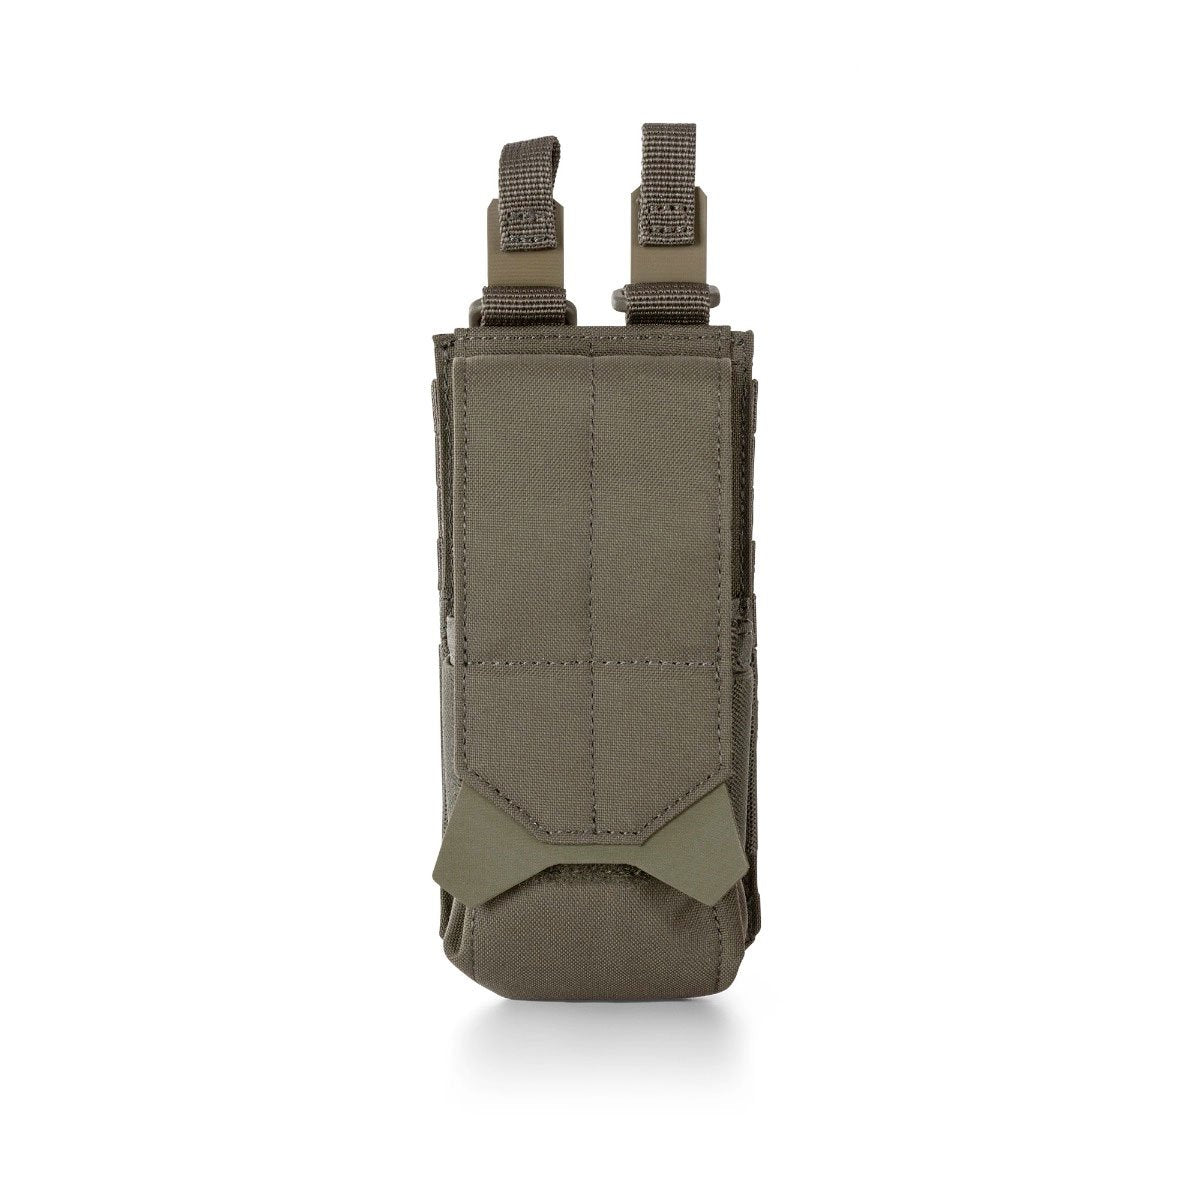 5.11 Tactical Flex Flash Bang Pouch Accessories 5.11 Tactical Ranger Green Tactical Gear Supplier Tactical Distributors Australia